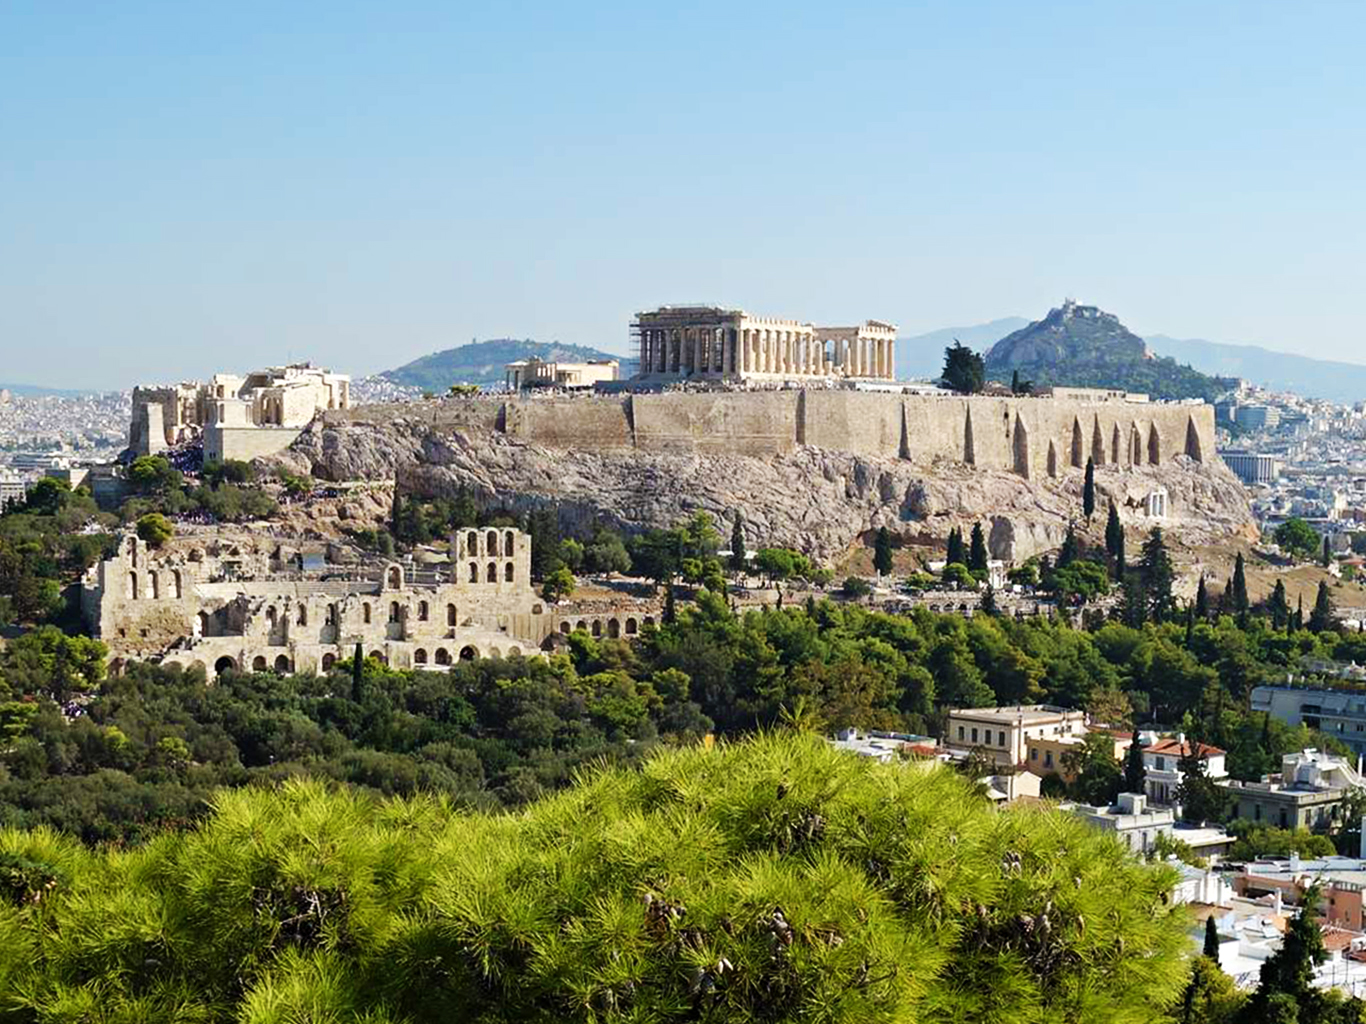 Pohled z dálky na pahorek Akropolis, nejvýznamnější antickou památku Atén